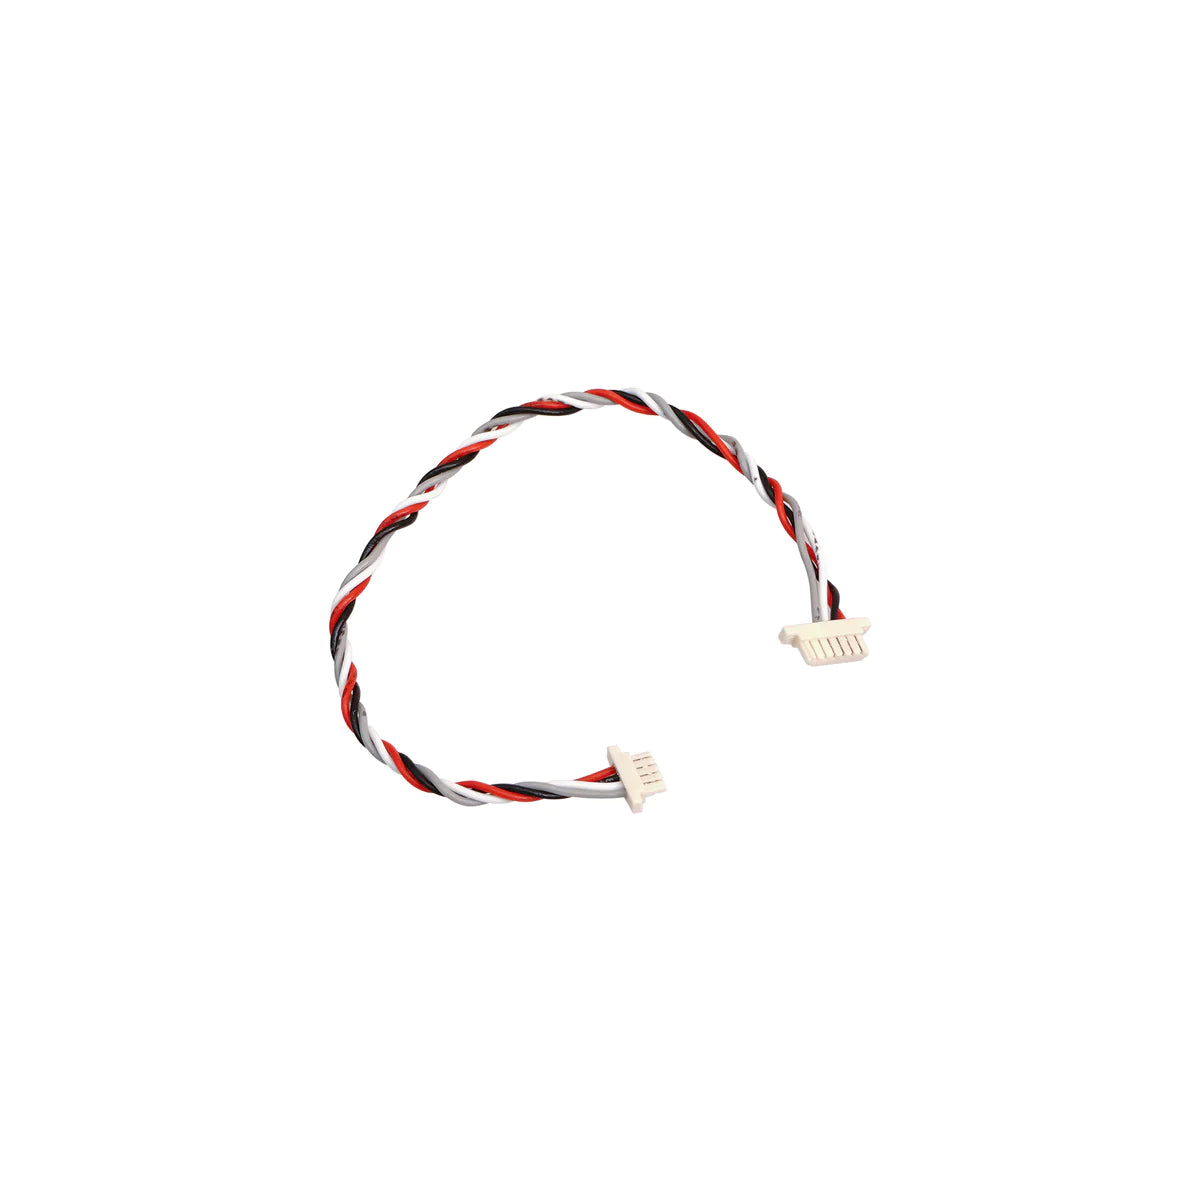 Walksnail Kit Type C USB Cable WNPJ-00017